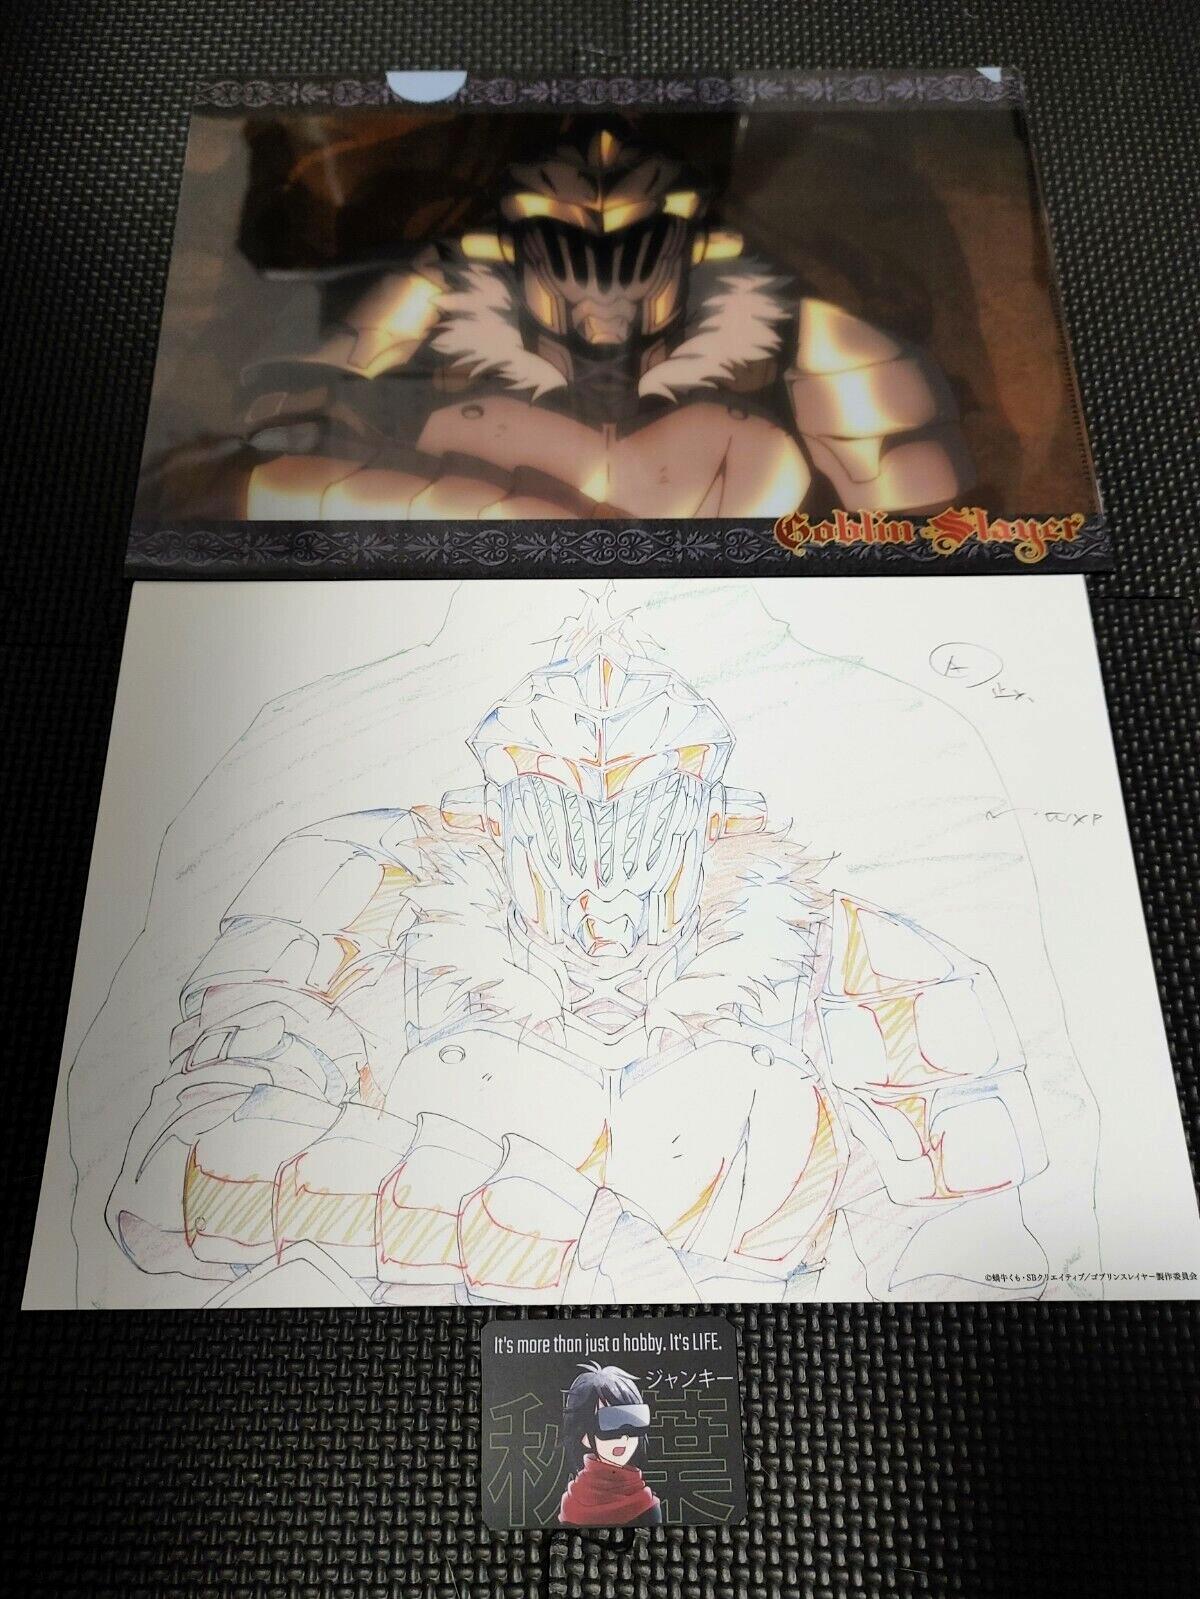 Goblin Slayer Animation Cel Print Design File G1 Japan Limited Release